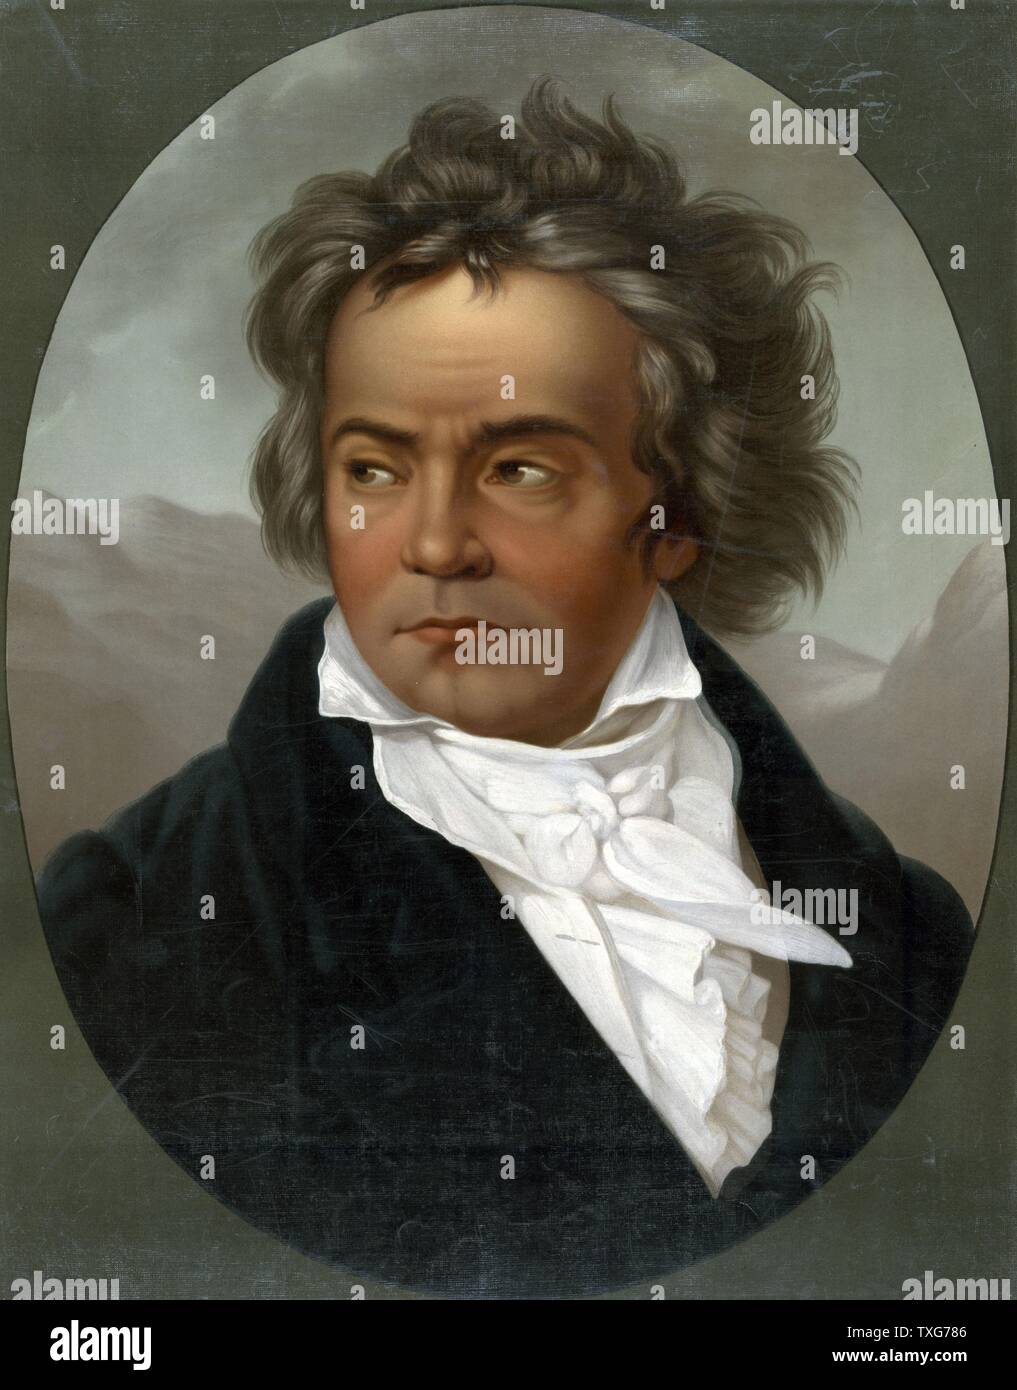 Ludwig van Beethoven, compositeur et pianiste allemand dont la musique a été une transition entre la musique classique et romantique Banque D'Images